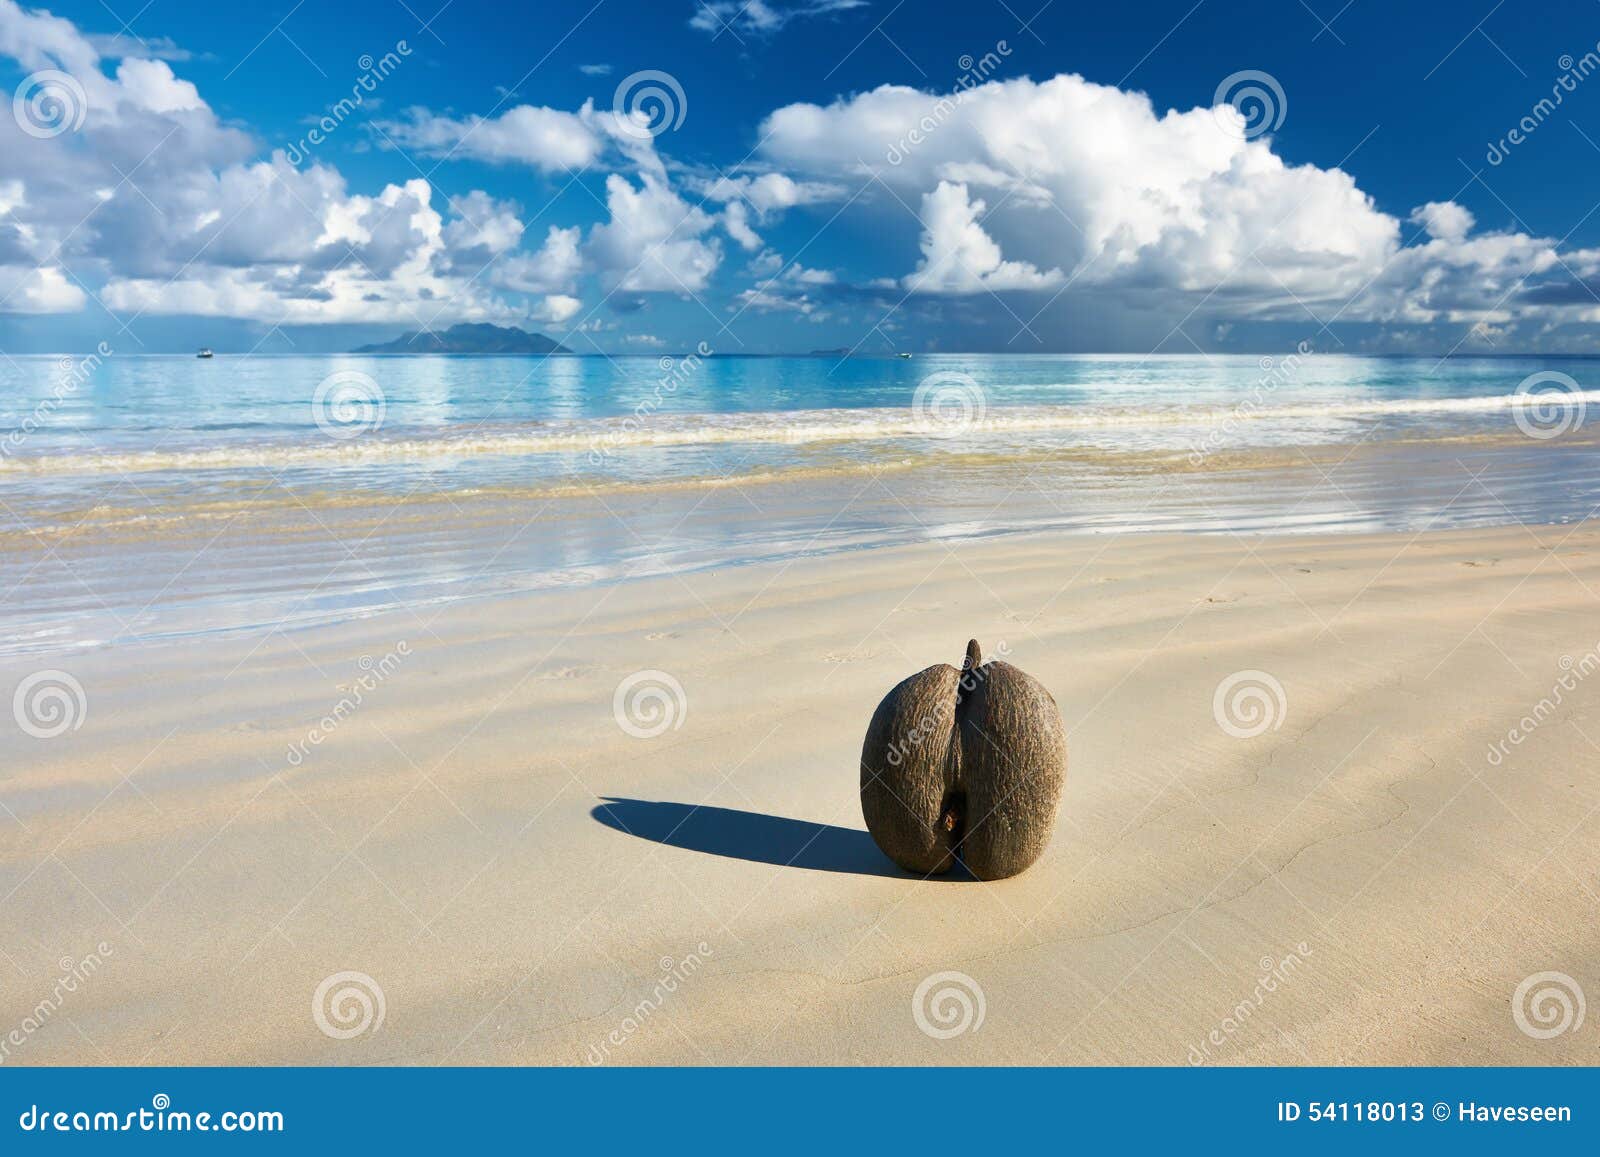 海的椰子(coco de mer)在塞舌尔群岛的海滩 库存图片. 图片 包括有 手段, 少见, 沙子, 休闲 - 53867441